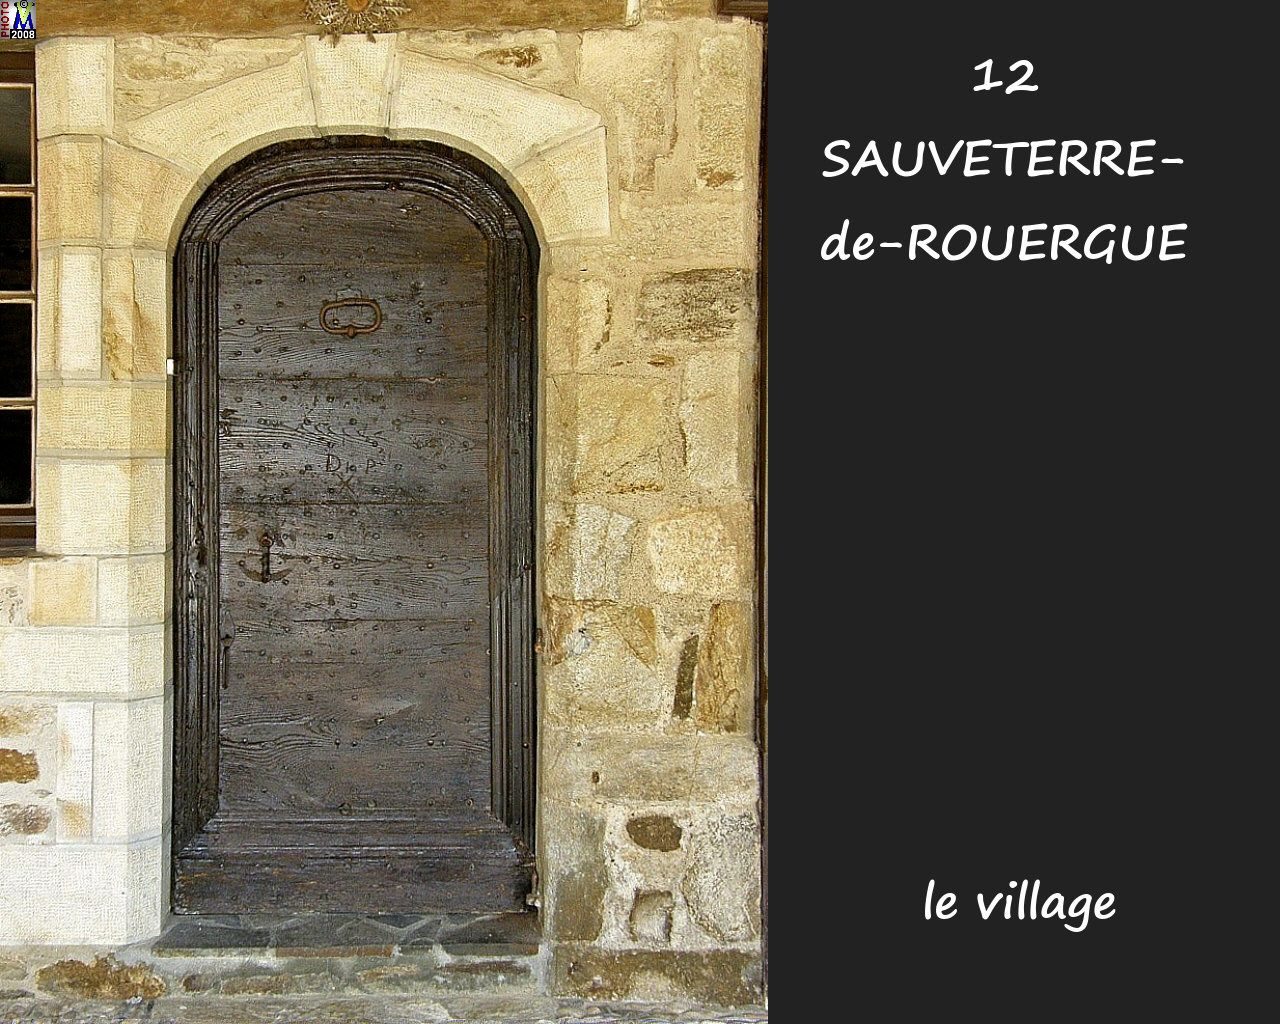 12SAUVETERRE-ROUERGUE_village_196.jpg